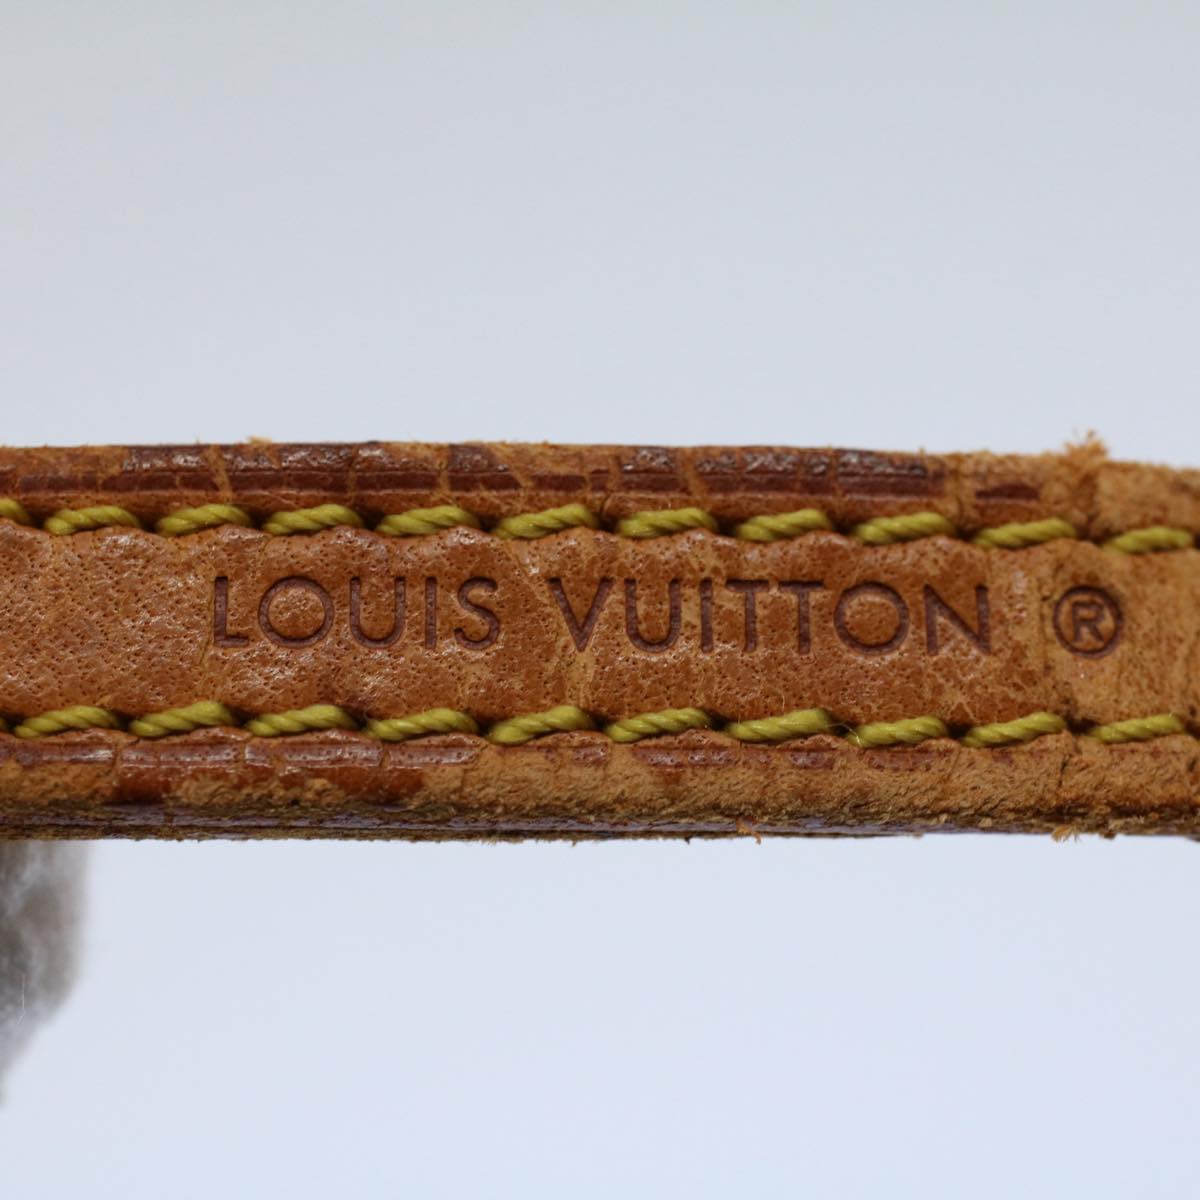 LOUIS VUITTON Shoulder Strap Leather 47.2"" Beige LV Auth 56091